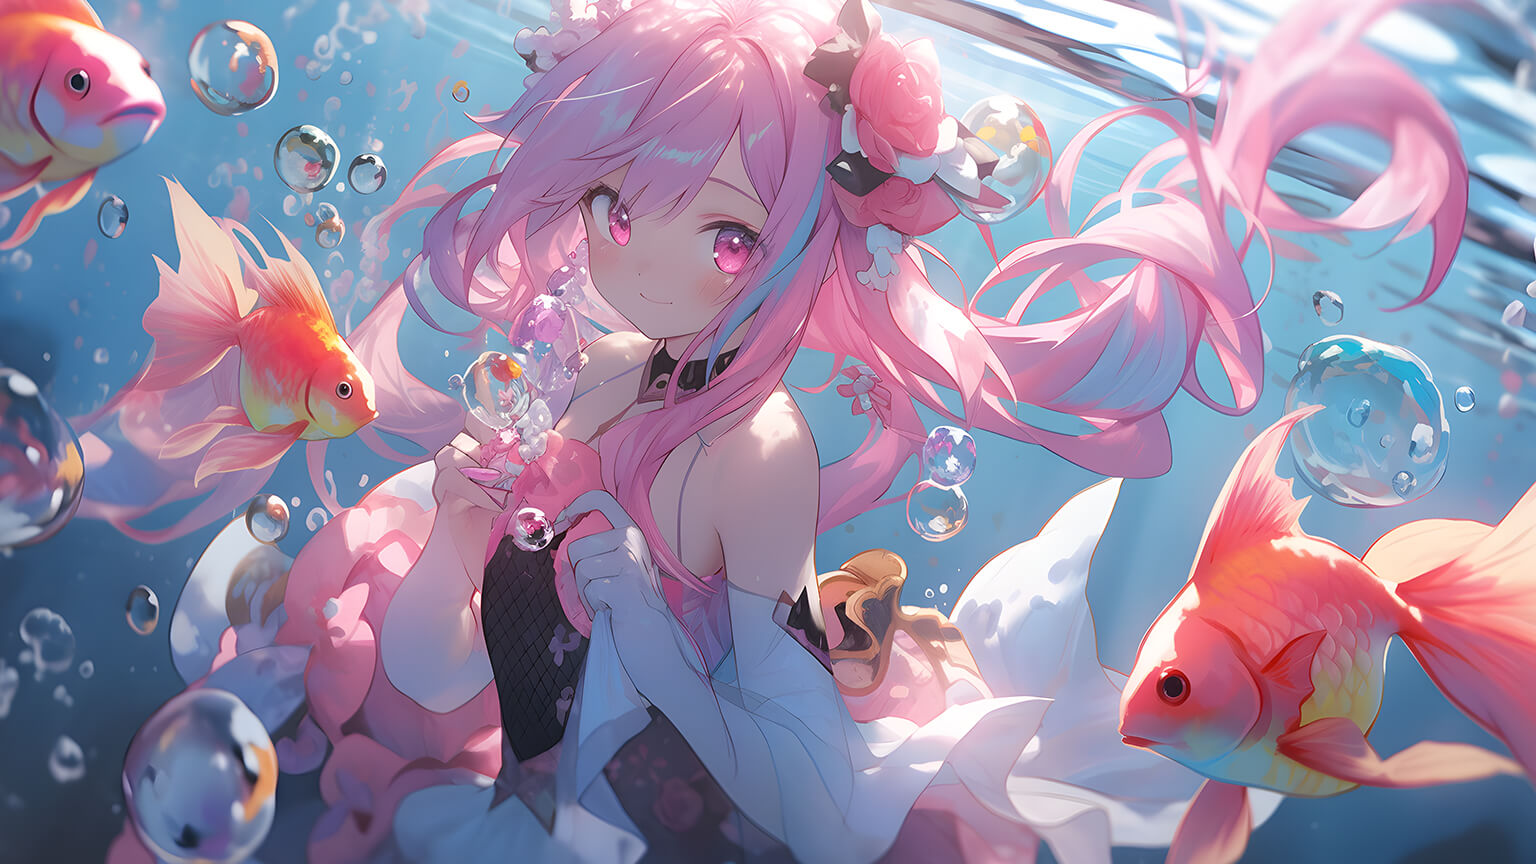 Underwater - Anime Girls Wallpapers and Images - Desktop Nexus Groups